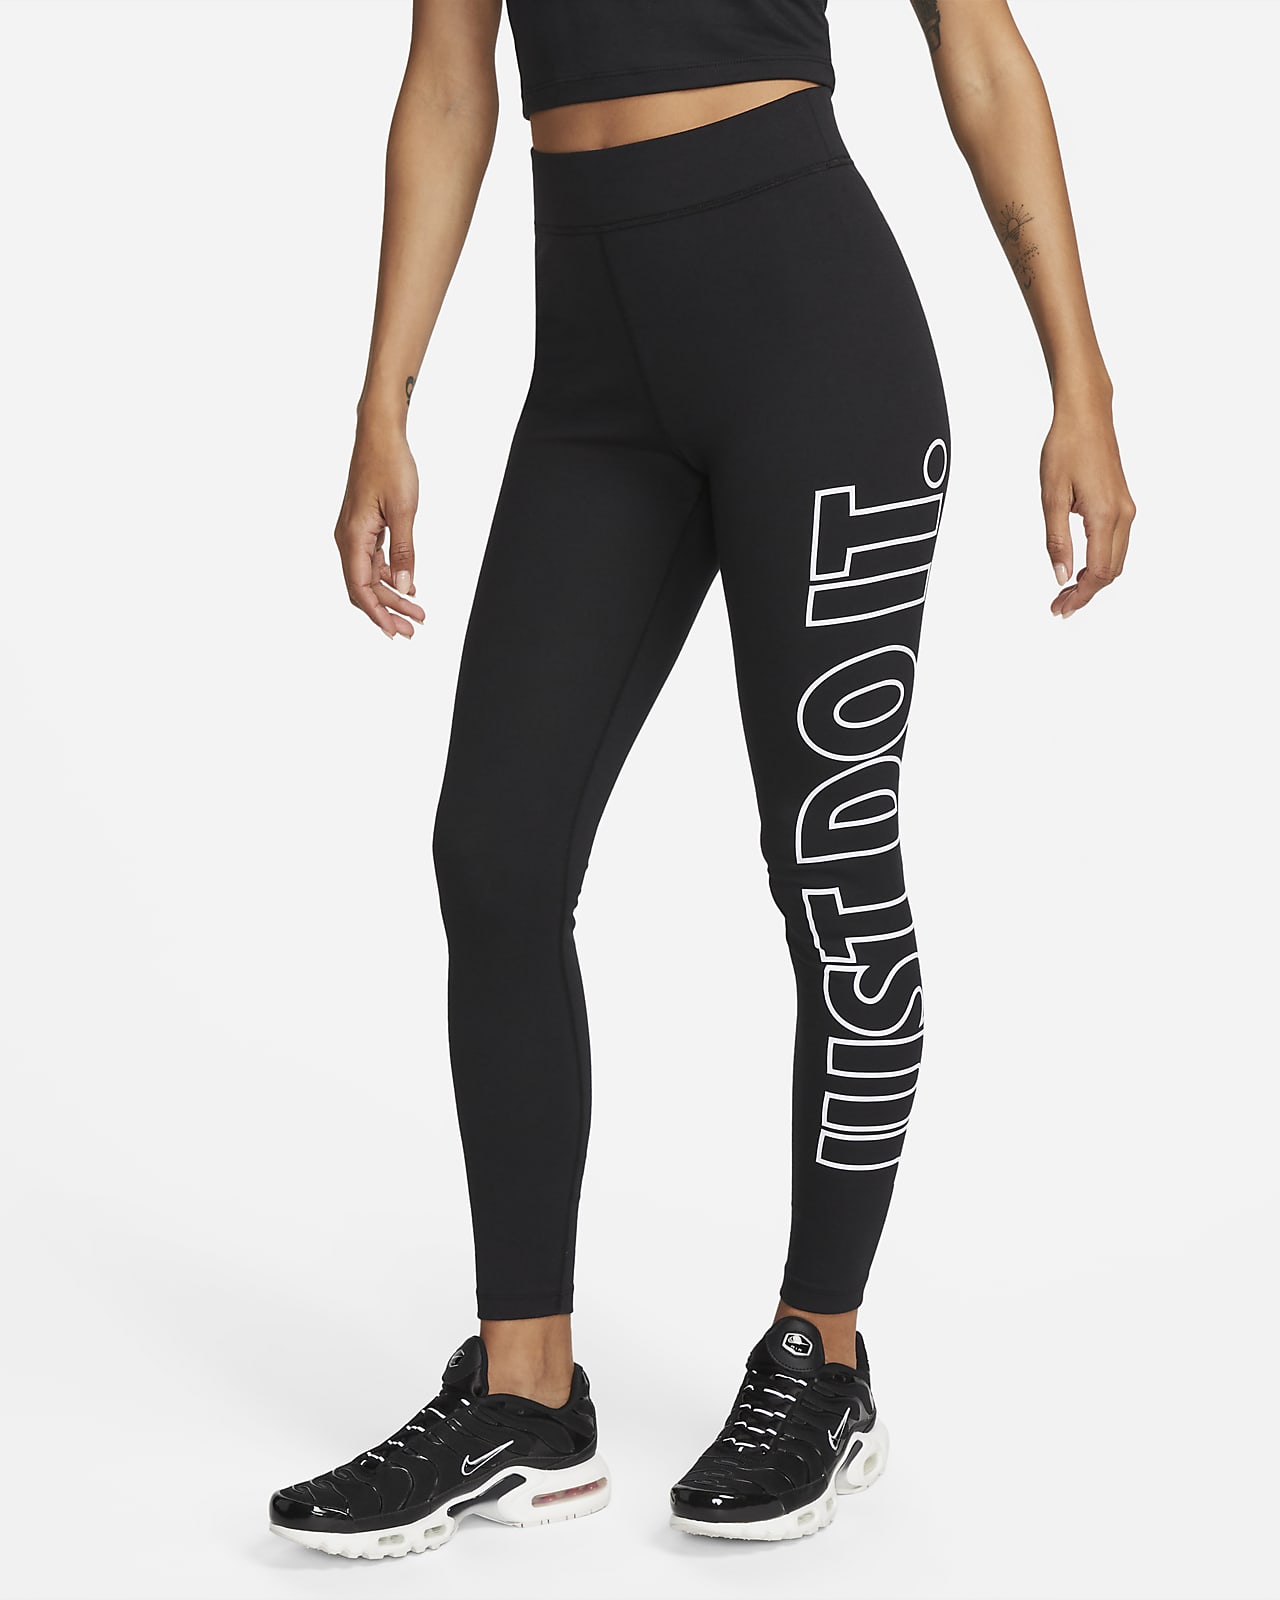 𝅺Tuff Athletics medium full length leggings black and white graphics EUC